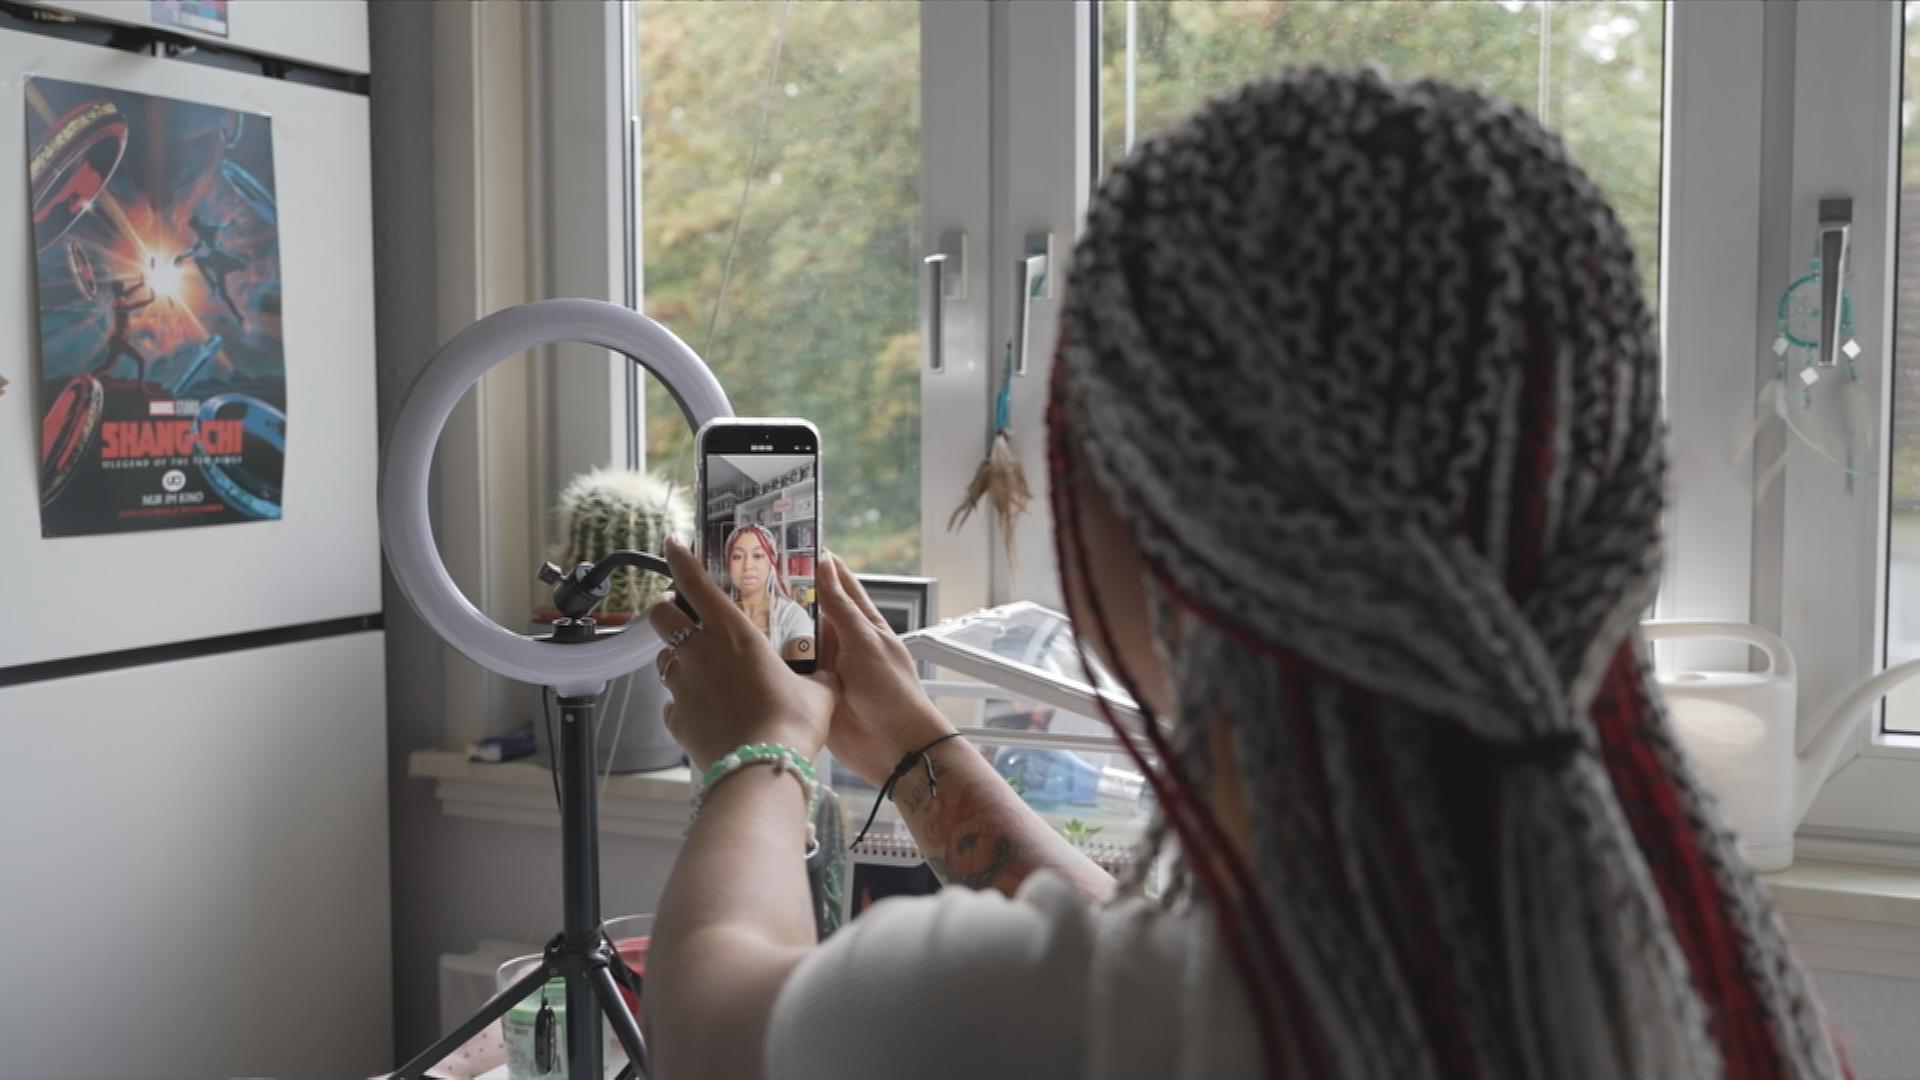 Auf dem Bild ist eine Tik-Tokerin zu sehen die gerade ein Selfievideo von sich aufnimmt.